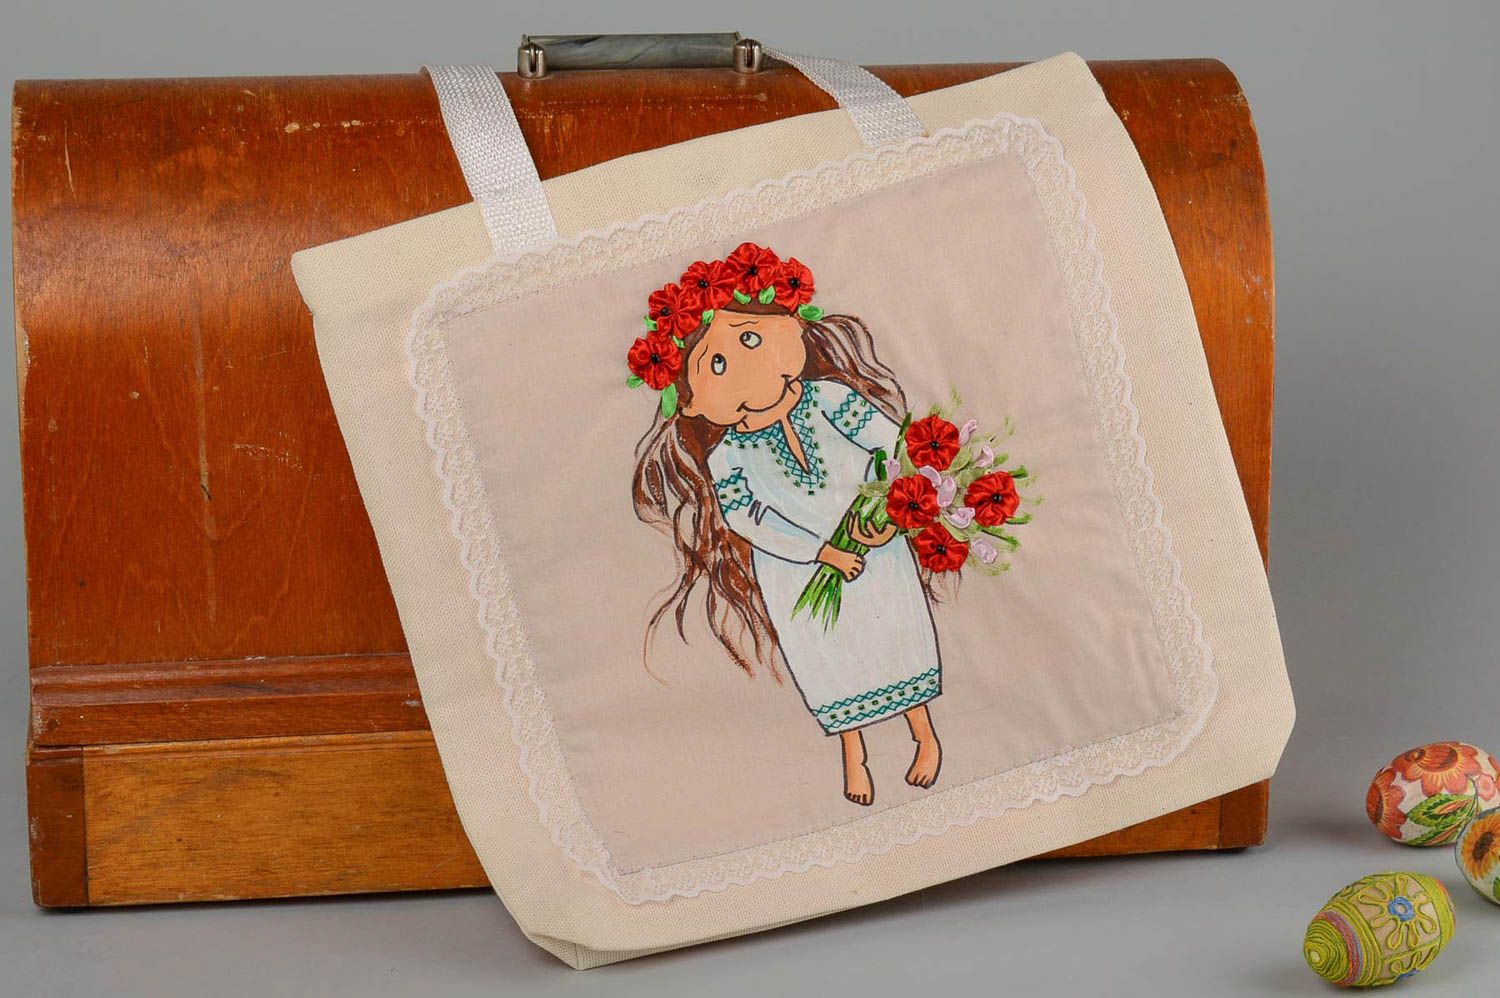 Сумка ручной работы сумка с рисунком акриловмыи красками женская сумка фото 1